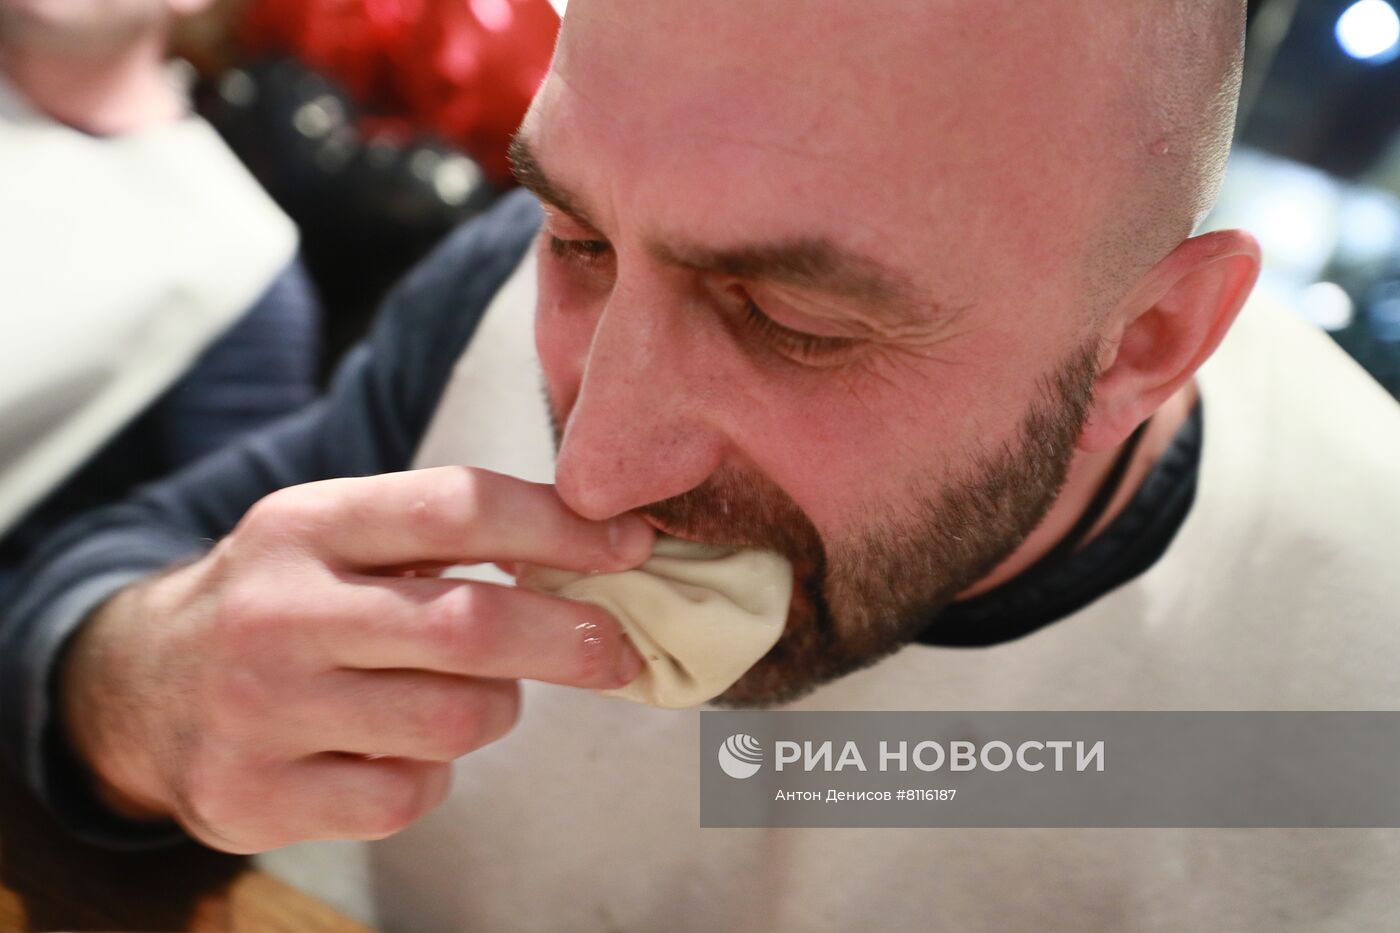 Первый чемпионат по поеданию хинкали в Москве